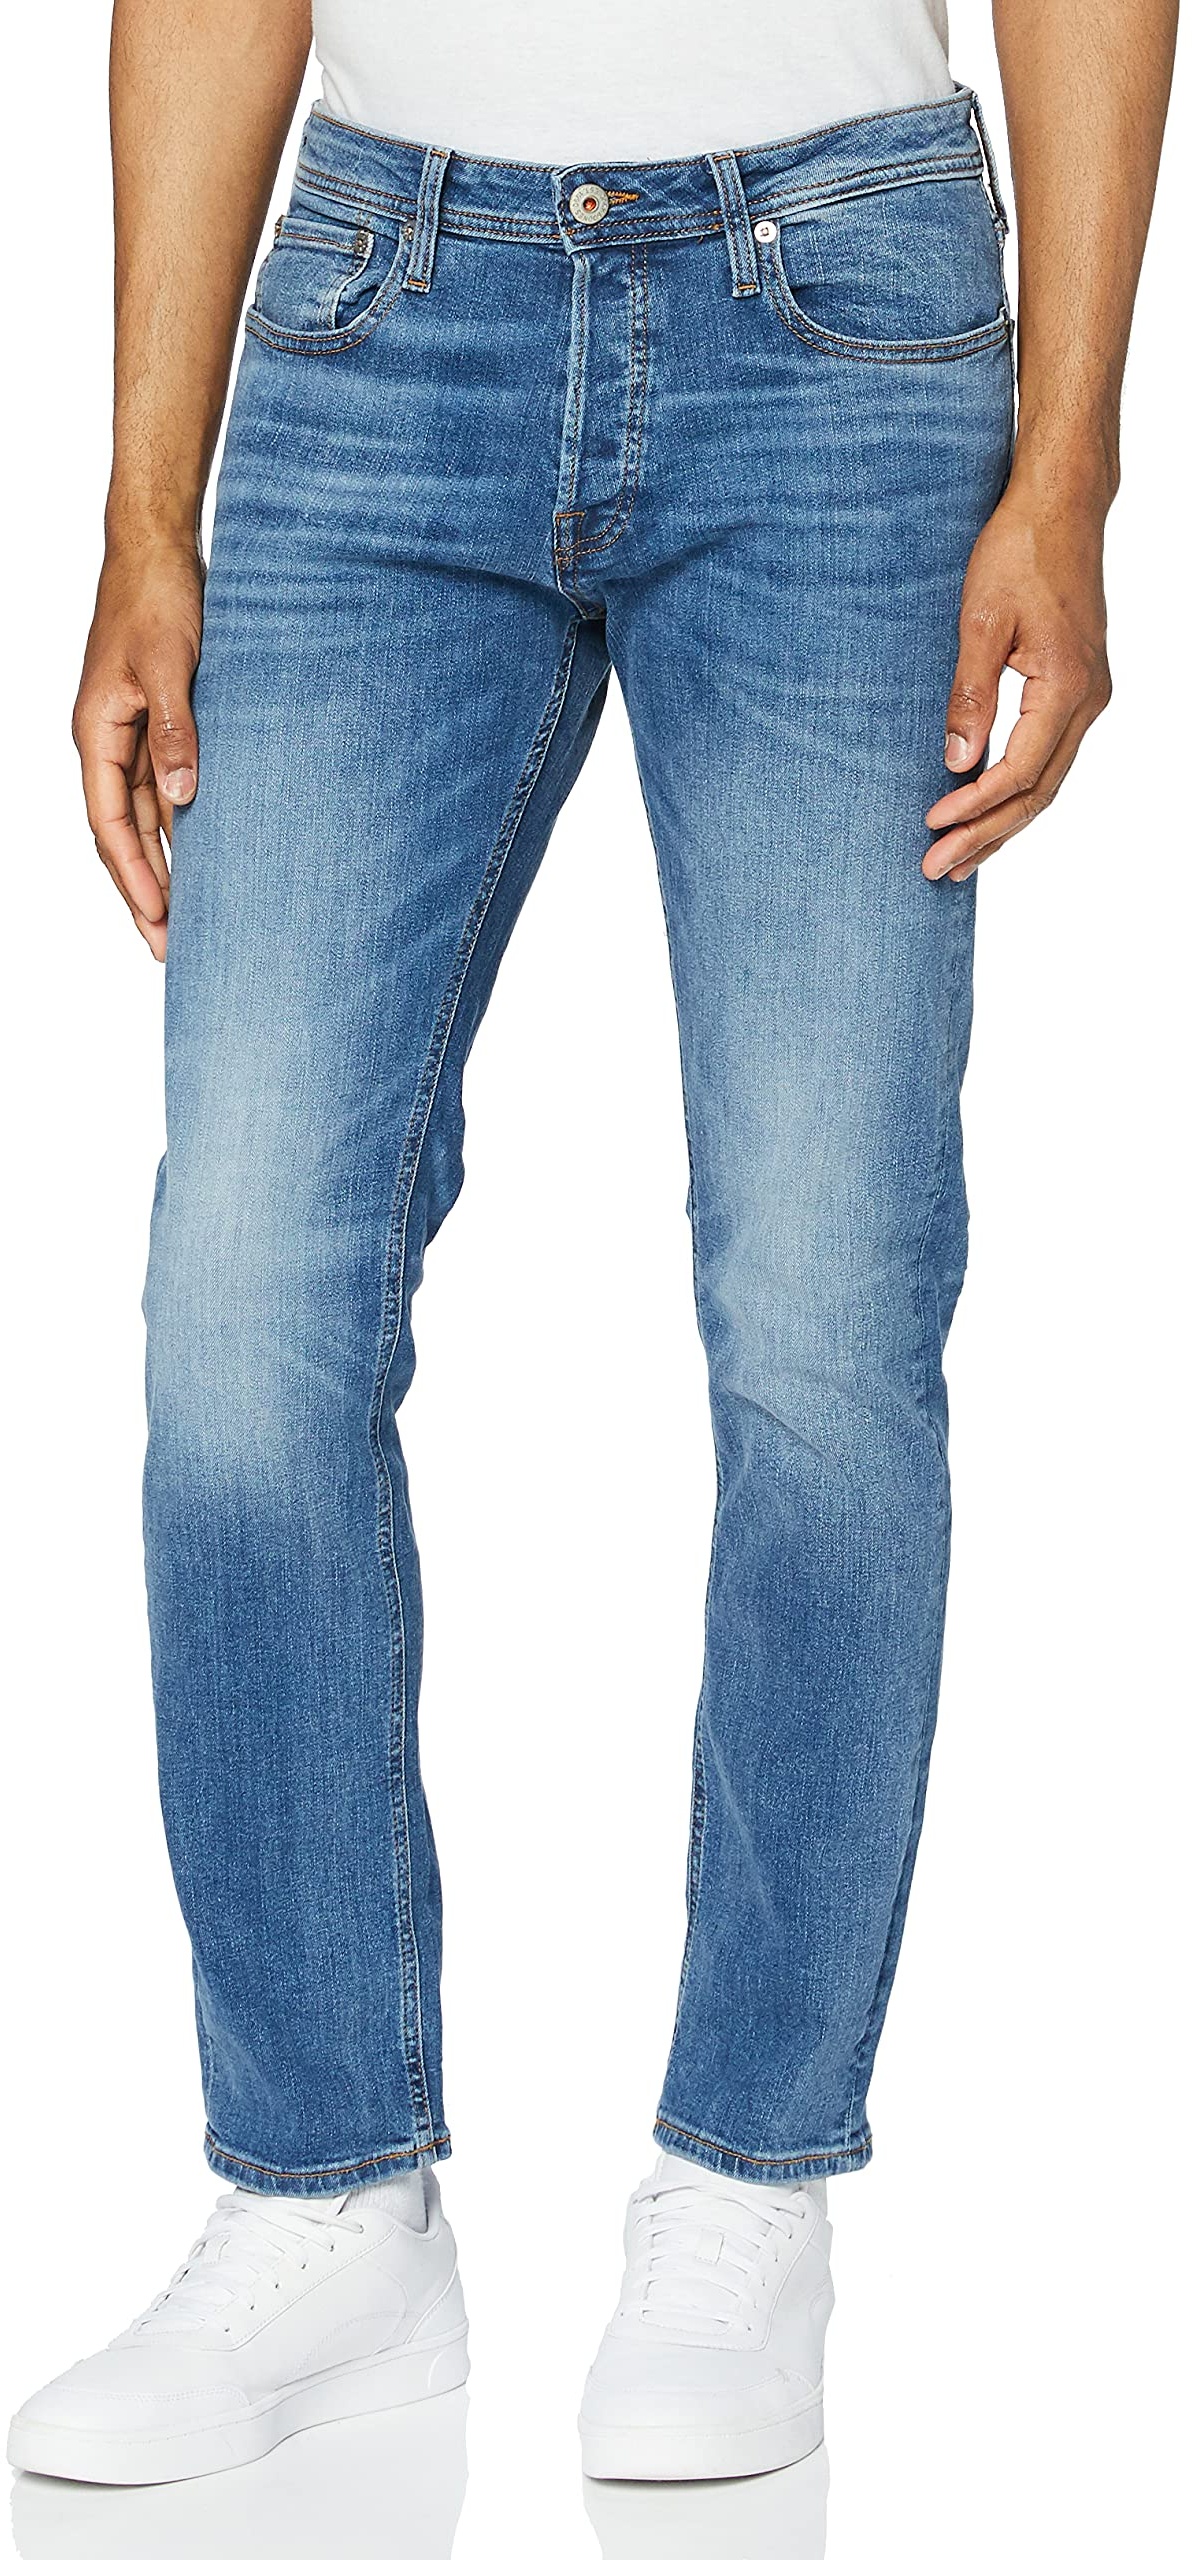 Herren Jack & Jones Jeans Tim Straight Legs Slim Fit Flat Front Tim ORIGINAL, Farben:Blau-2, Größe Jeans:31W / 30L